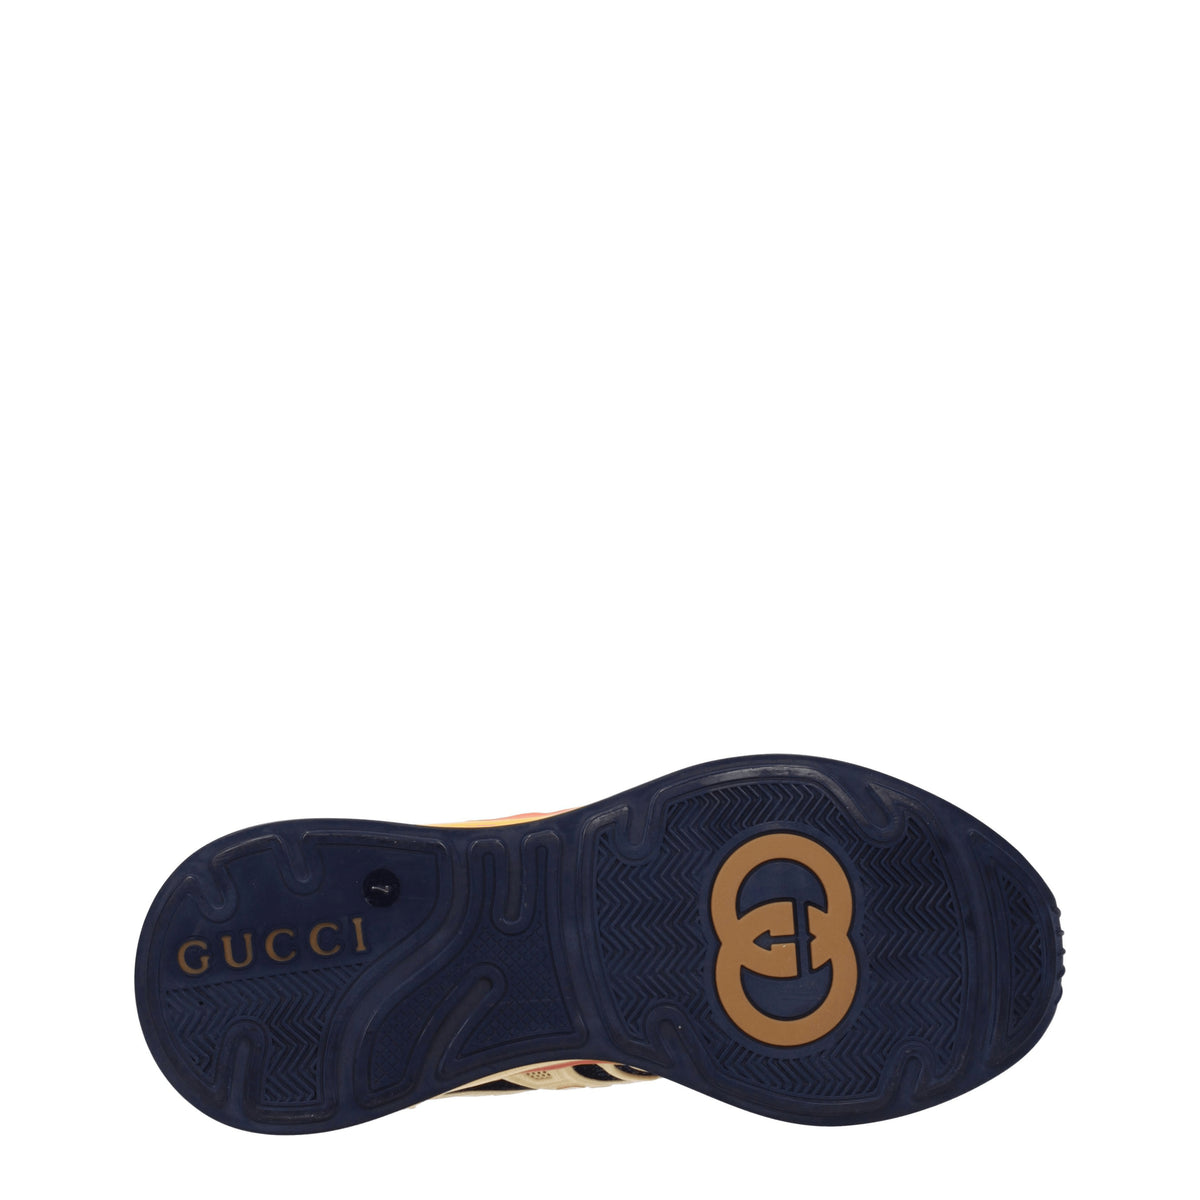 Gucci Sneakers ultrapace r Uomo Gomma Giallo Cobalto